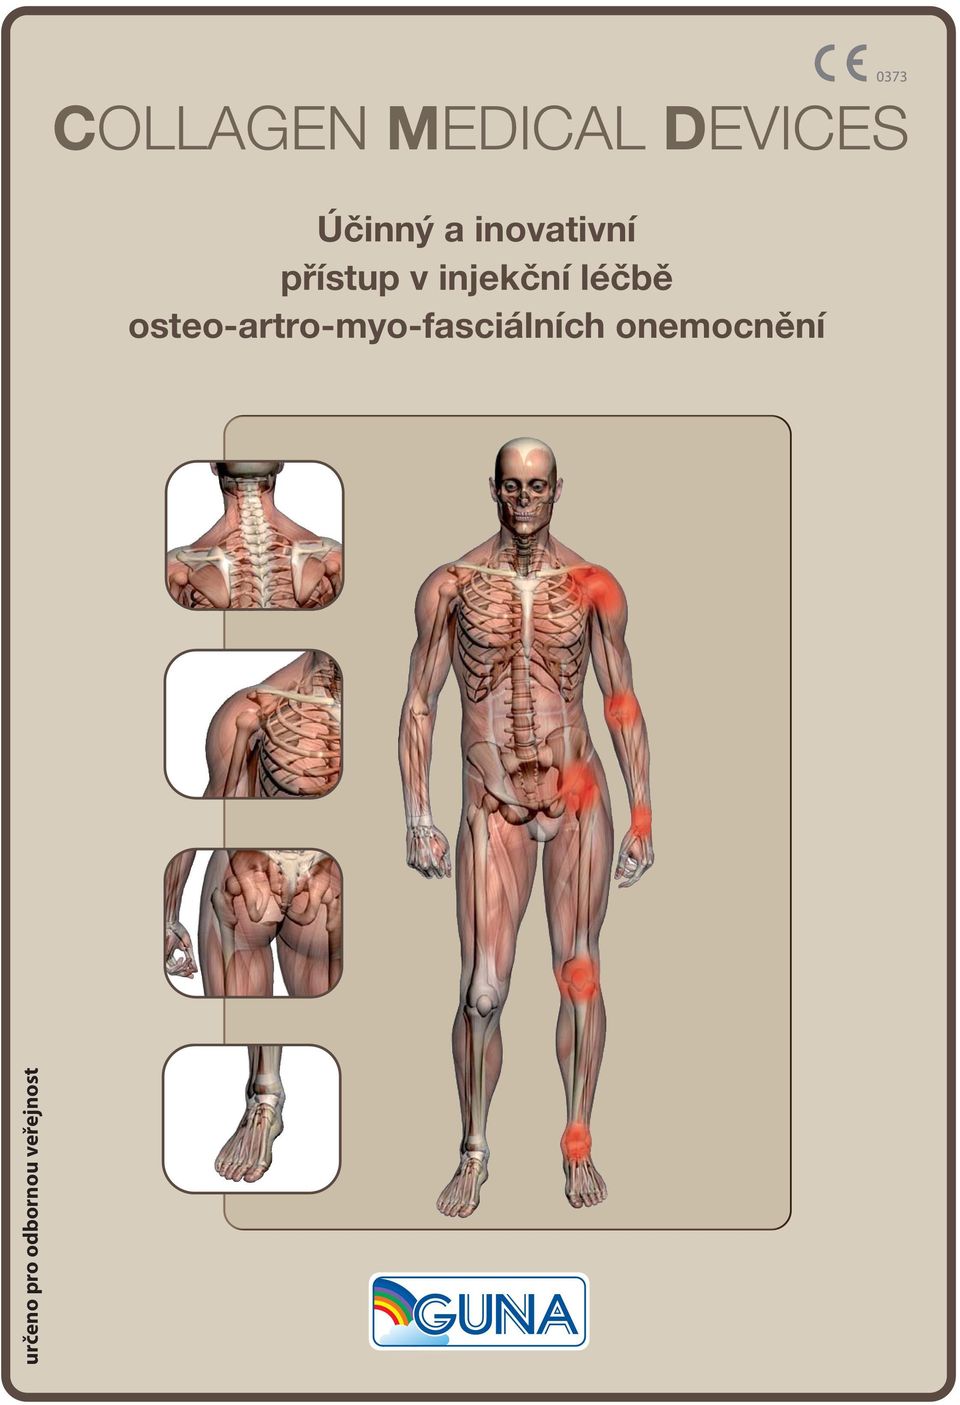 osteo-artro-myo-fasciálních